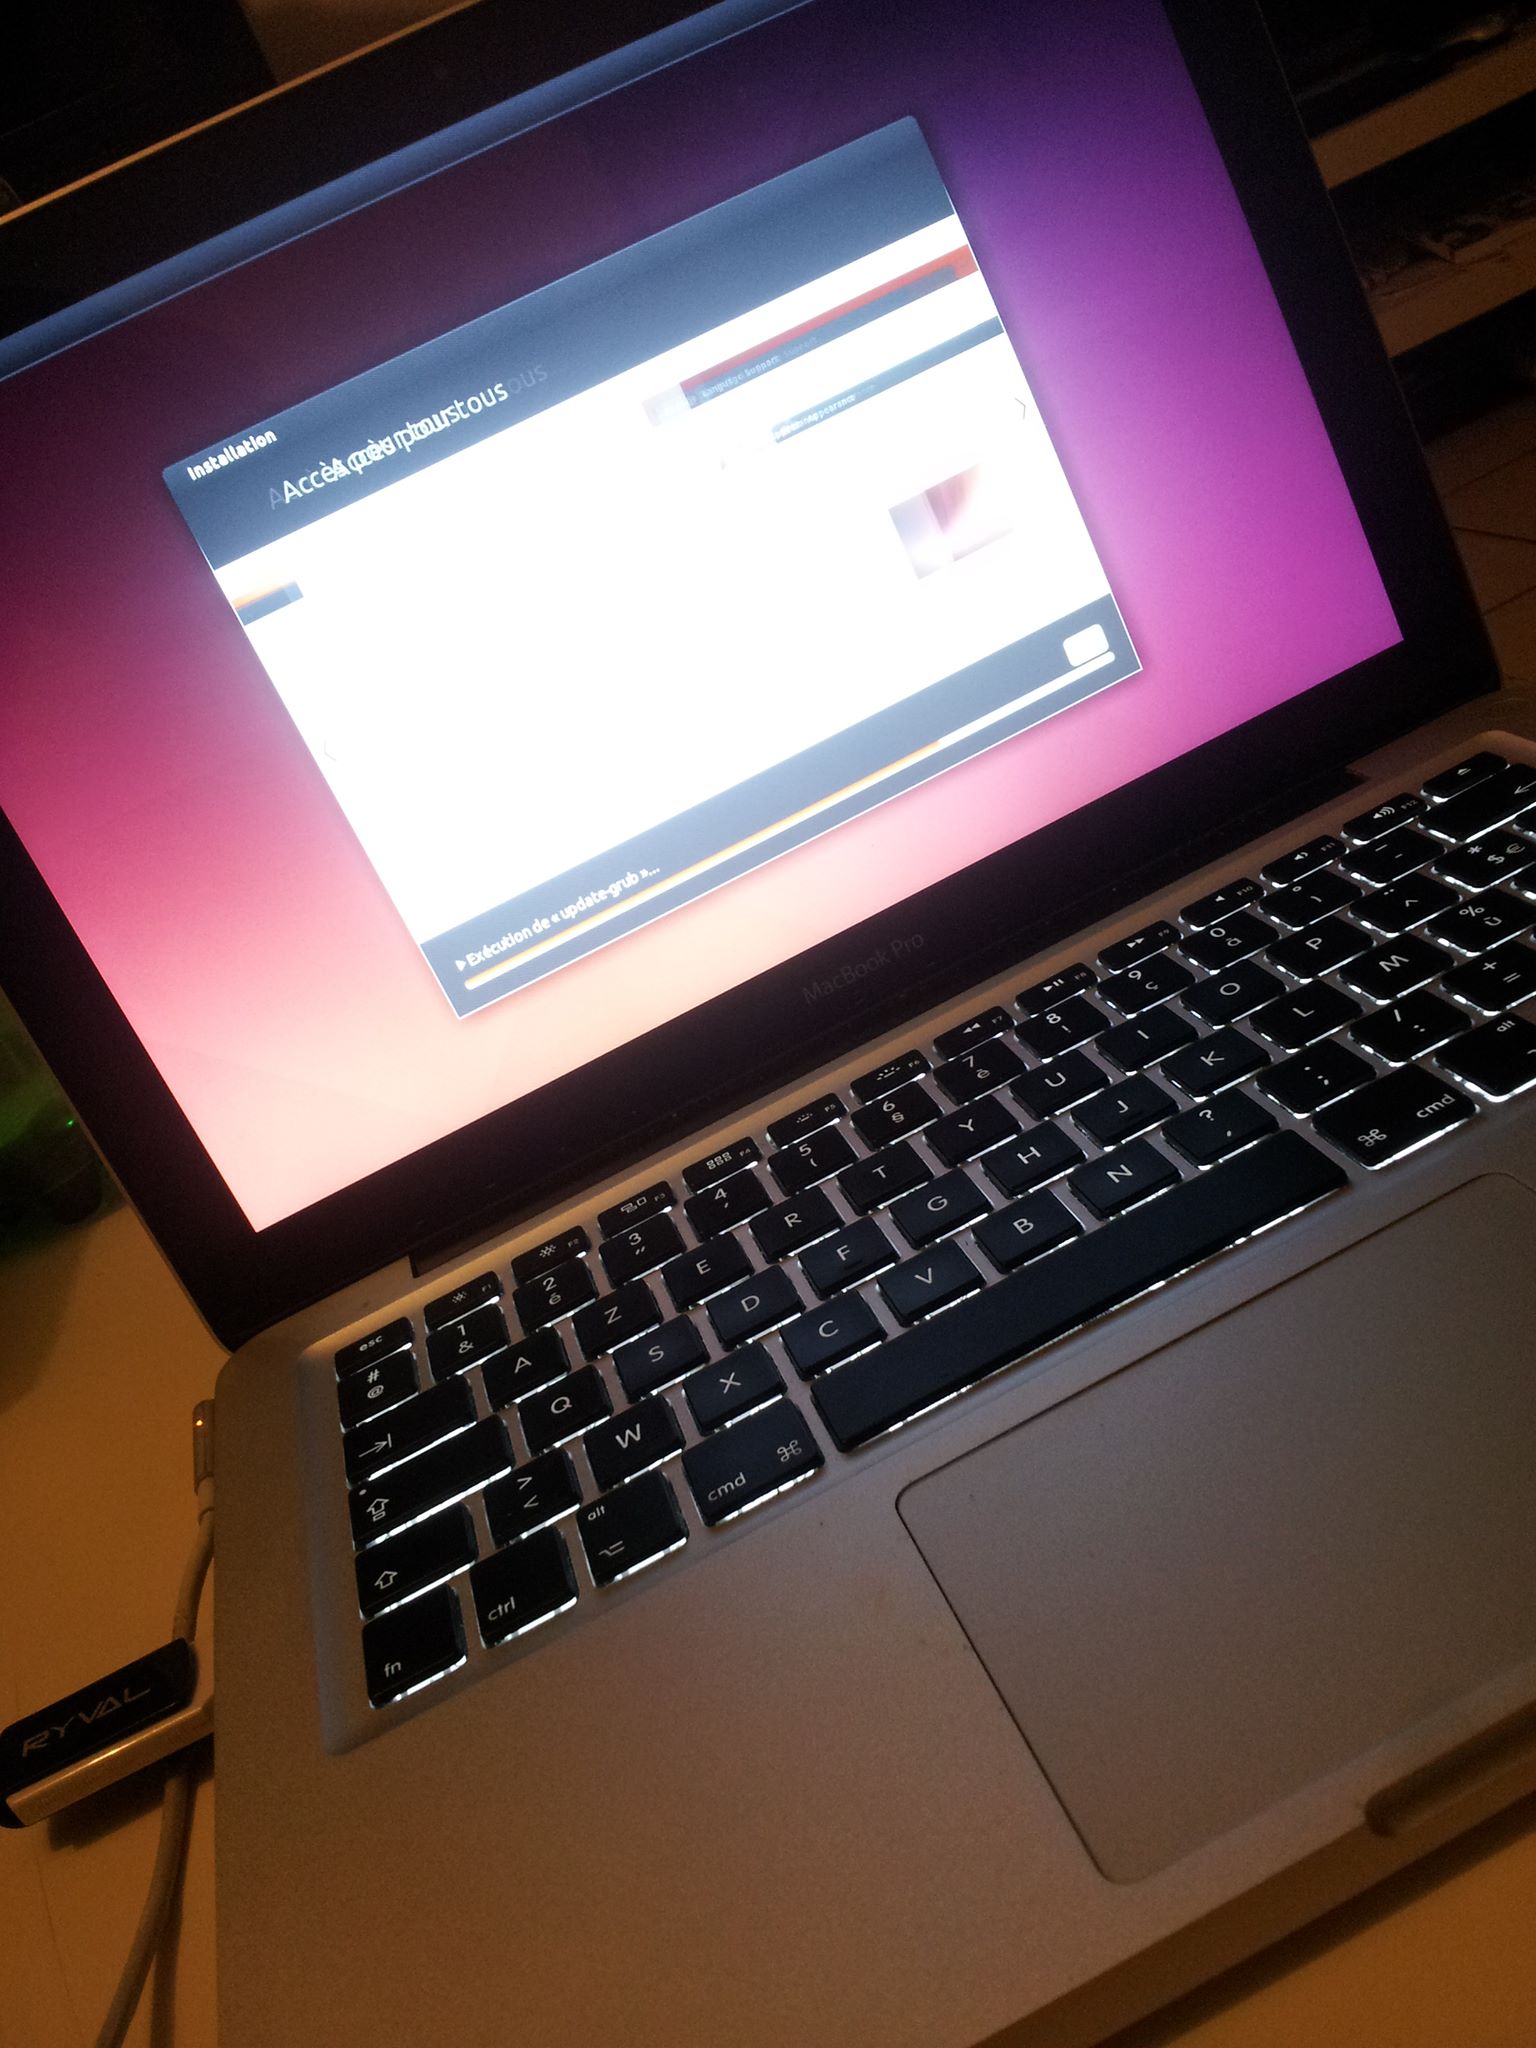 Ubuntu is installing ;-)